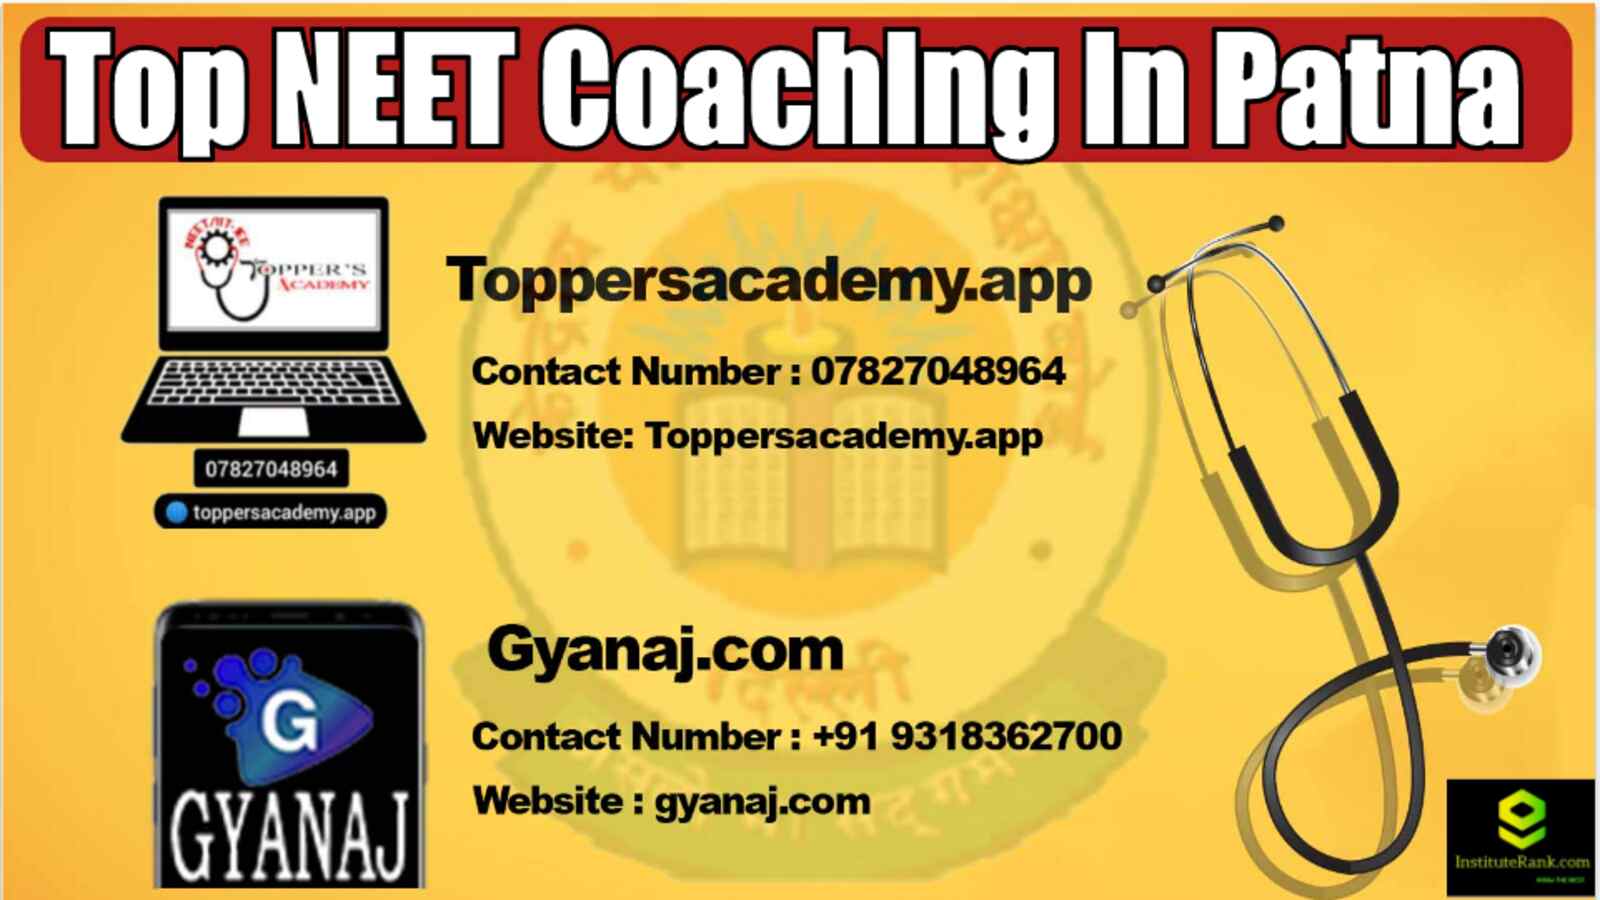 Top 10 NEET Coaching in Patna